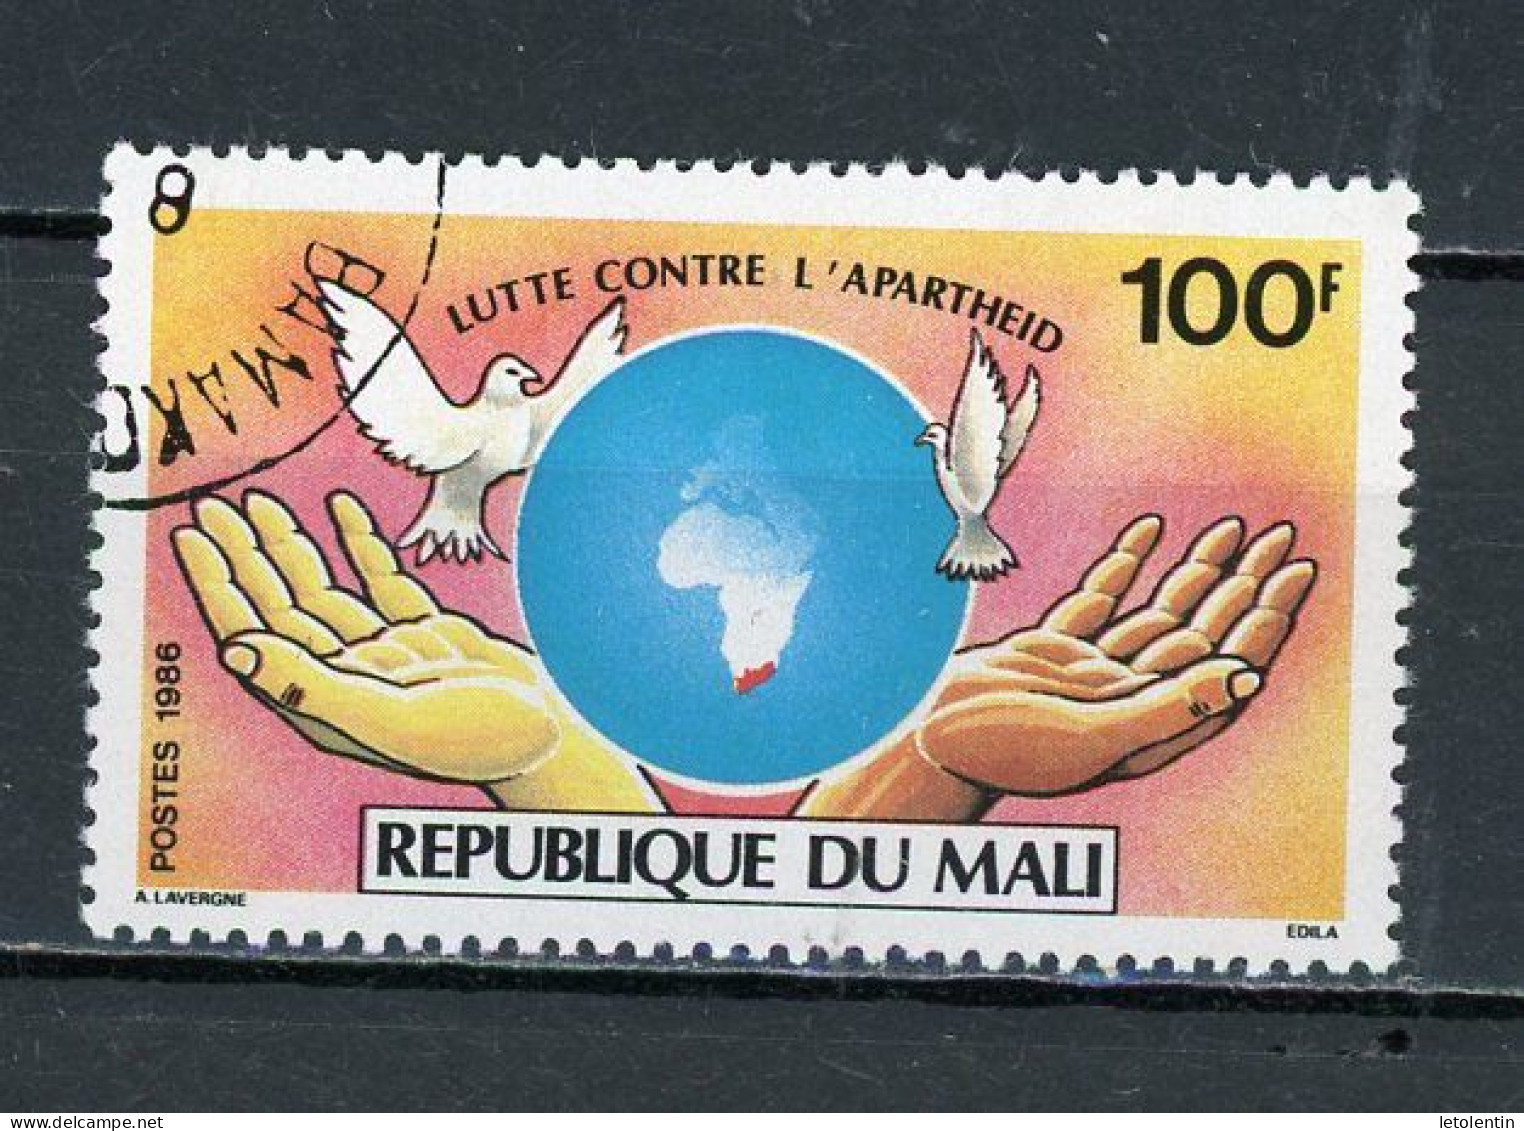 MALI : CONTRE L'APARTHEID - N° Yvert 530 Obli. - Mali (1959-...)